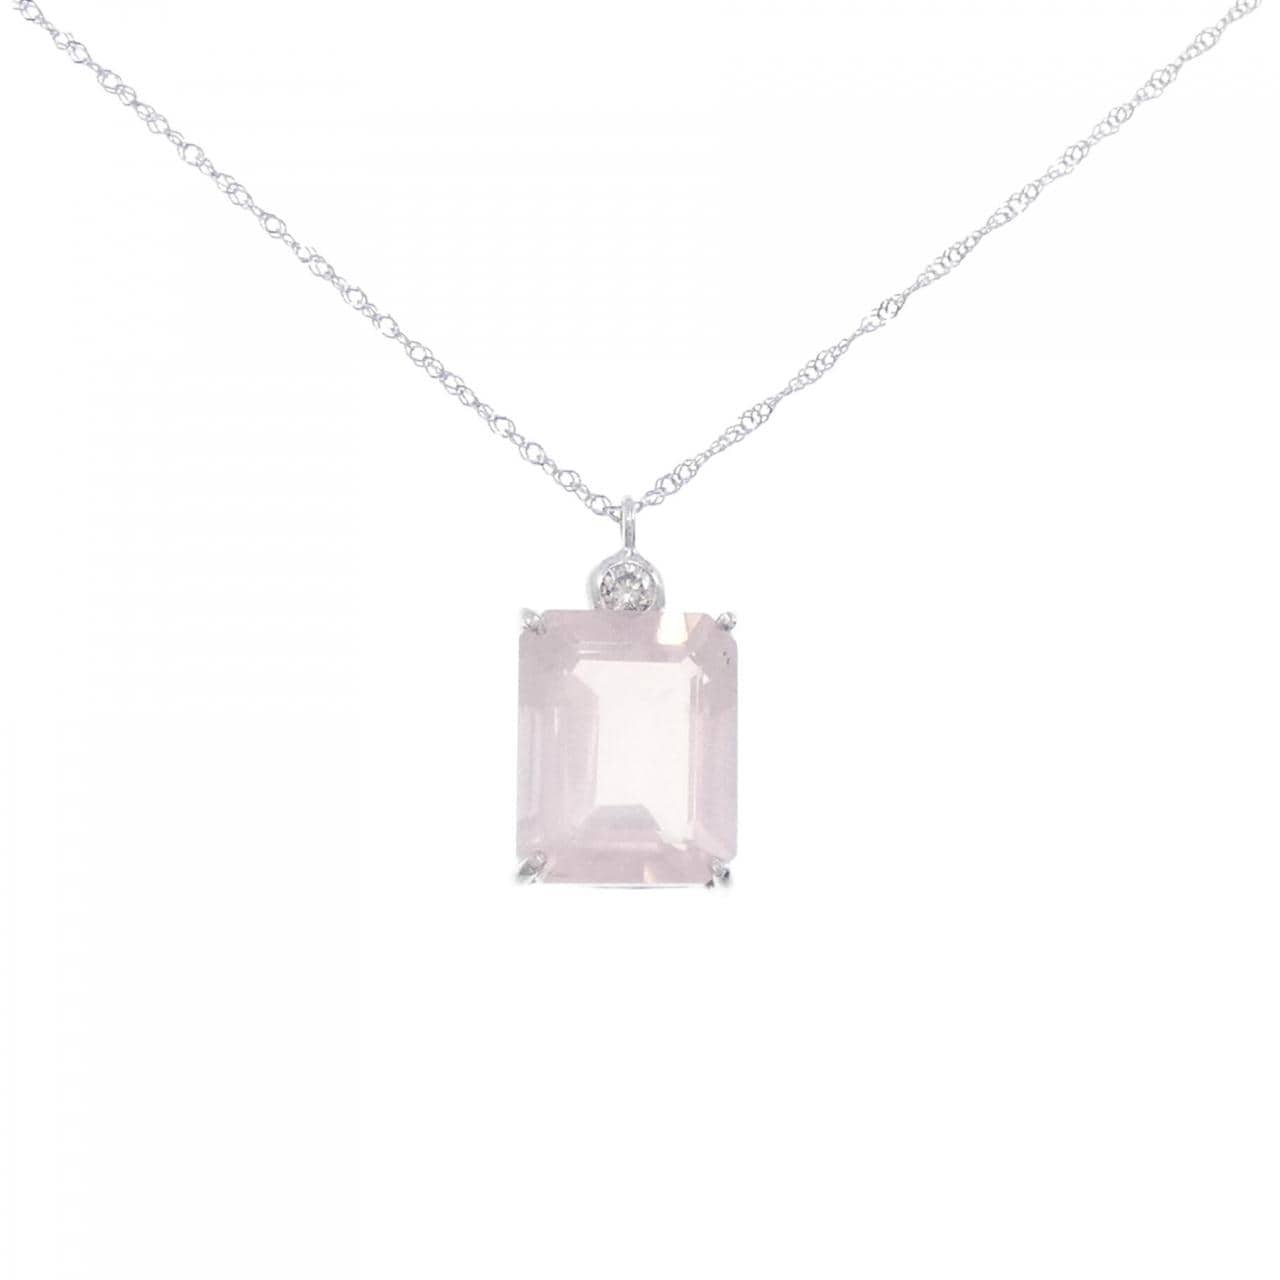 K18WG Rose Quartz Necklace 3.28CT